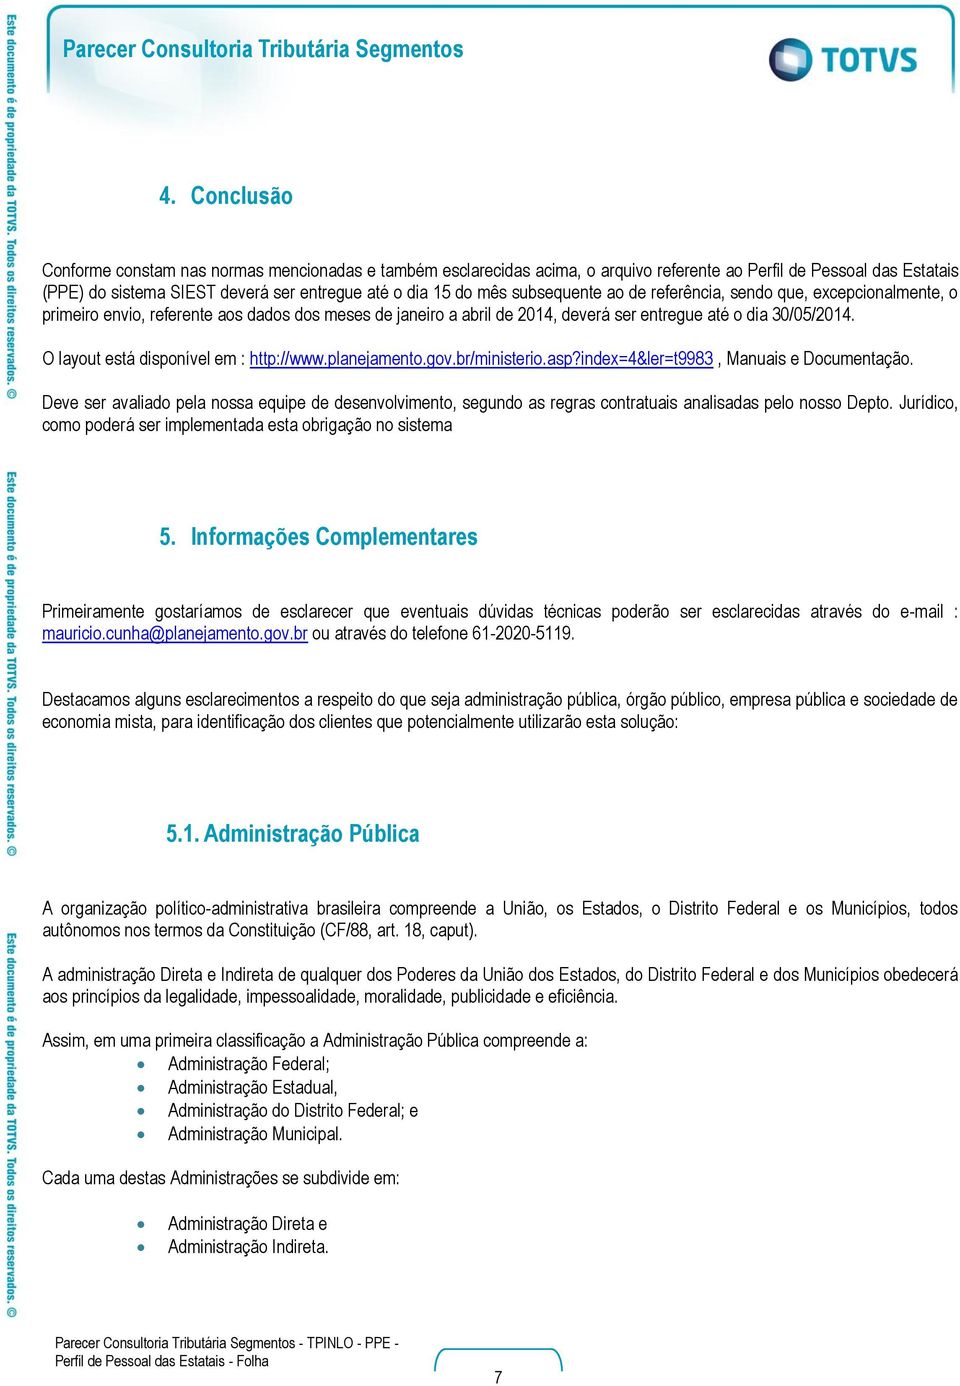 O layout está disponível em : http://www.planejamento.gov.br/ministerio.asp?index=4&ler=t9983, Manuais e Documentação.